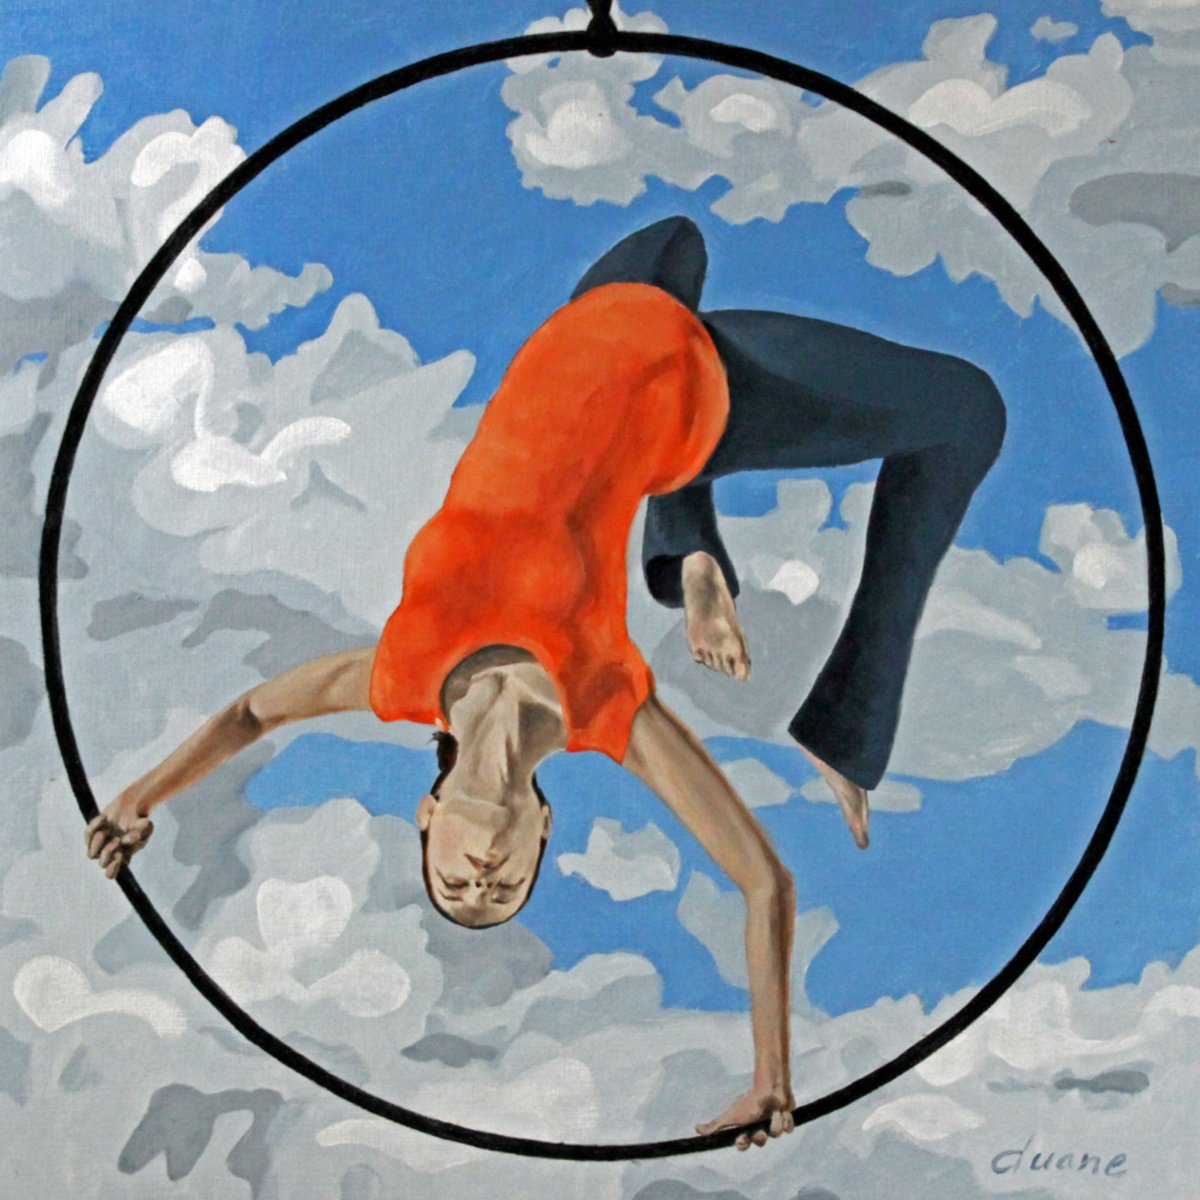 Aerial Hoop by Duane A Brown